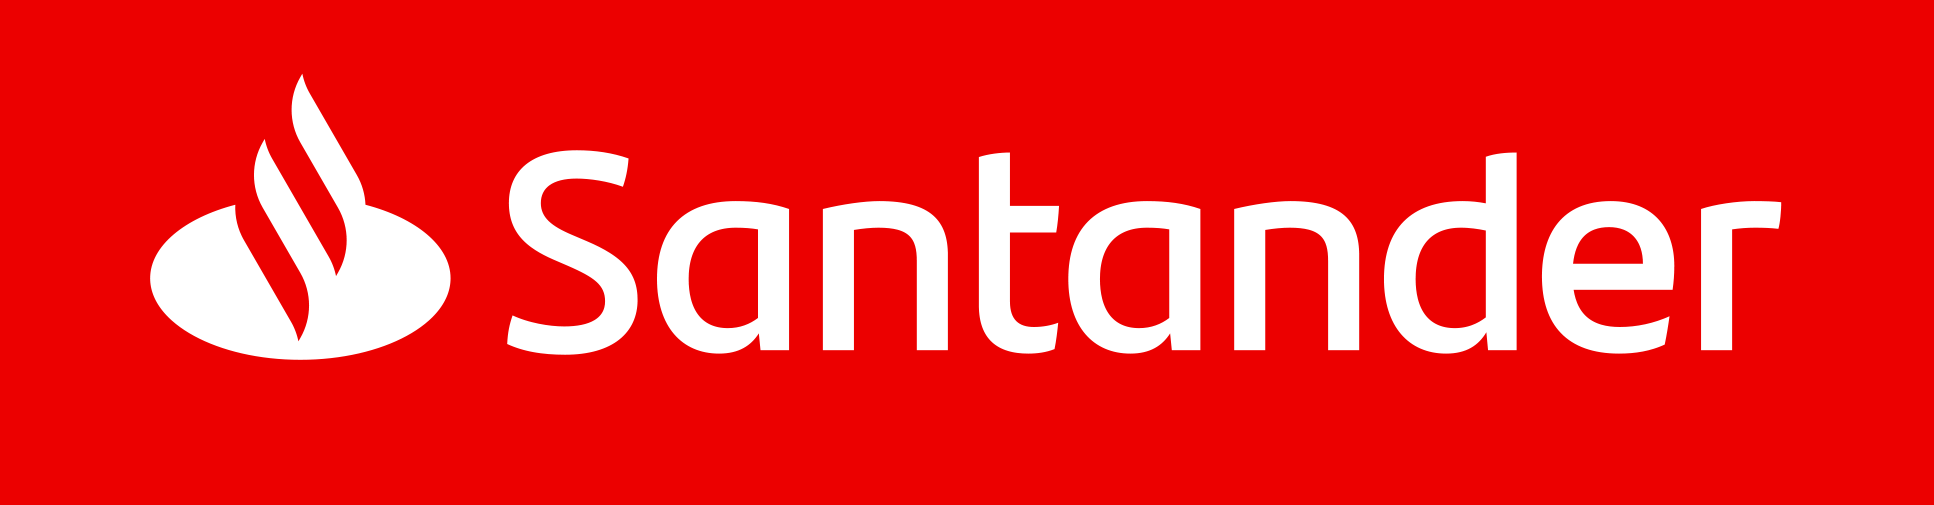 Santander Bank Polska, jako pierwszy w Europie, wdrożył nowy sposób uwierzytelniania płatności - 3DSecure 2.2.0 